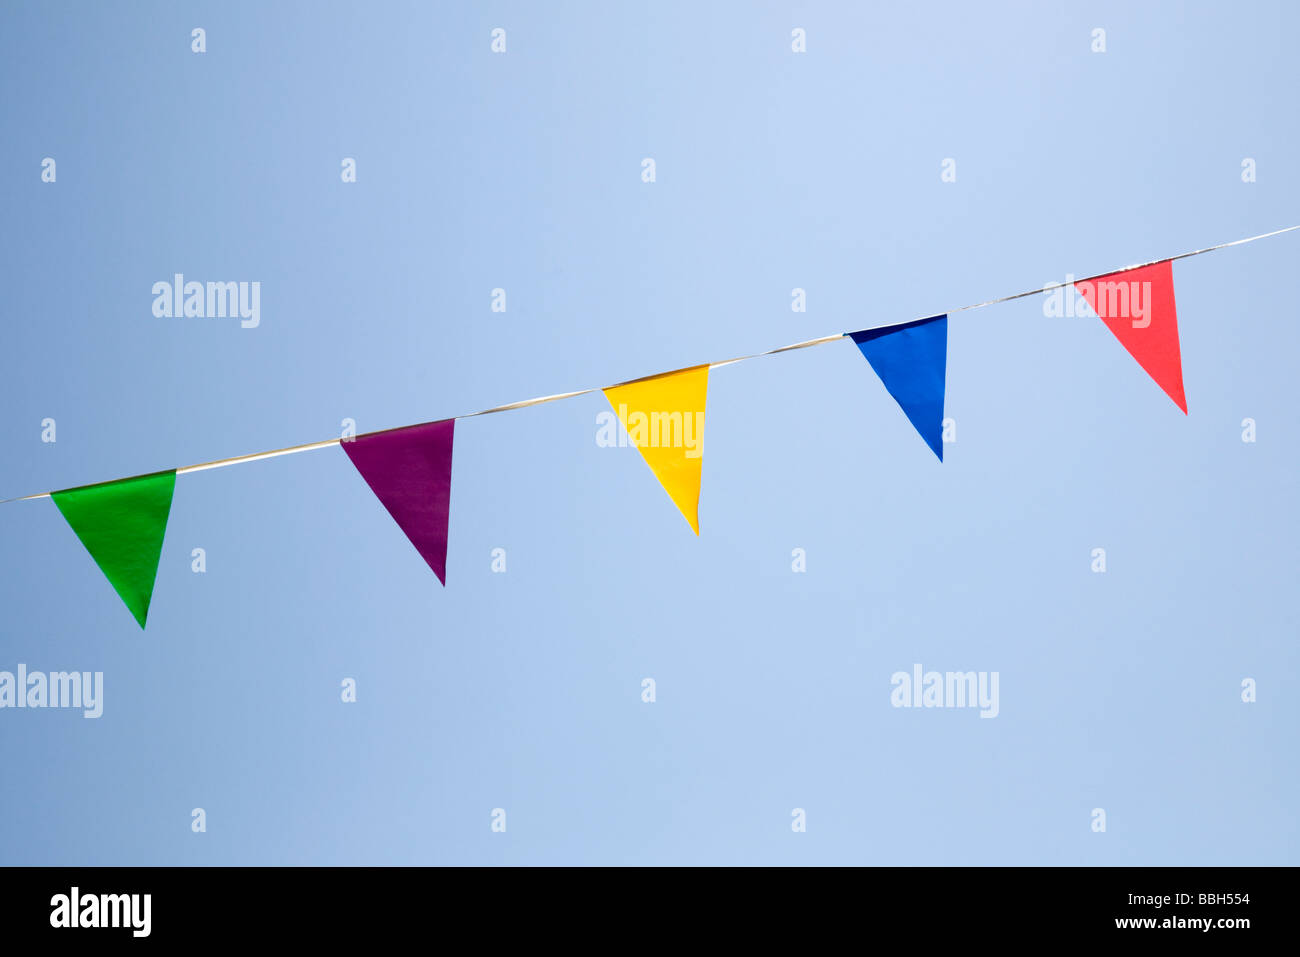 Bunting - triangular banderas de diferentes colores contra un cielo azul Foto de stock